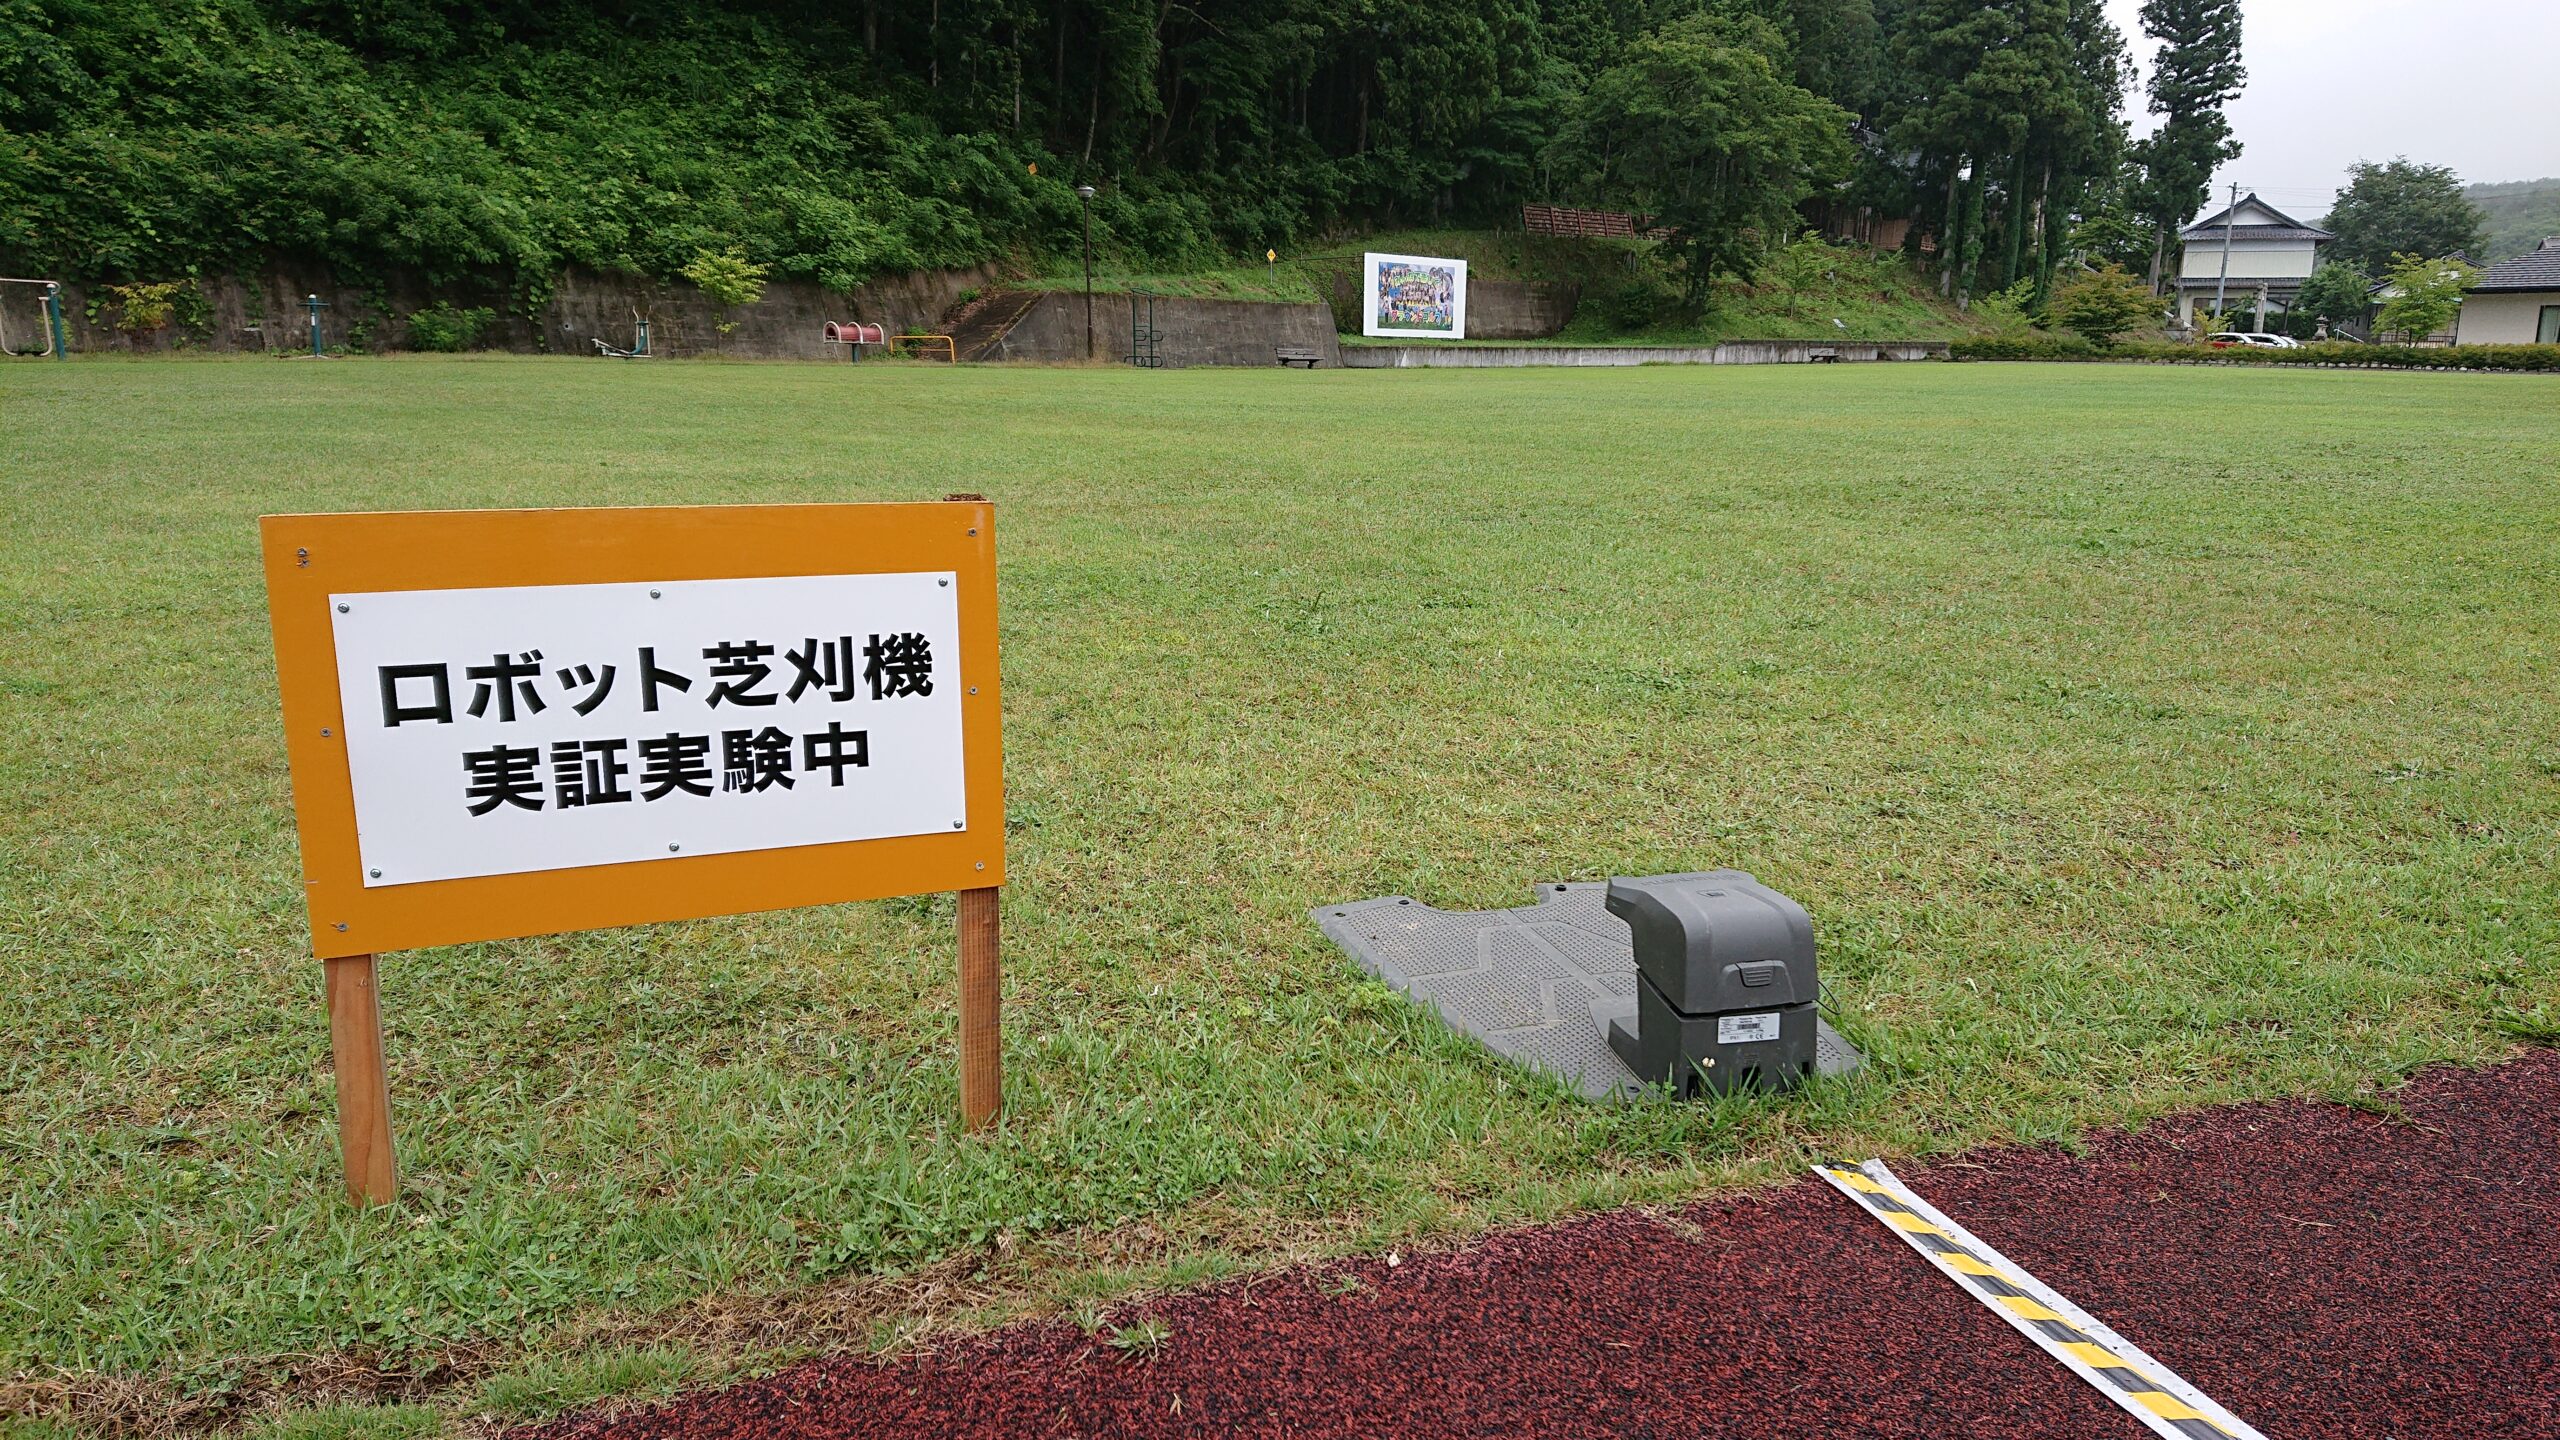 川内村にてロボット芝刈機導入による維持管理費軽減実証実験中。